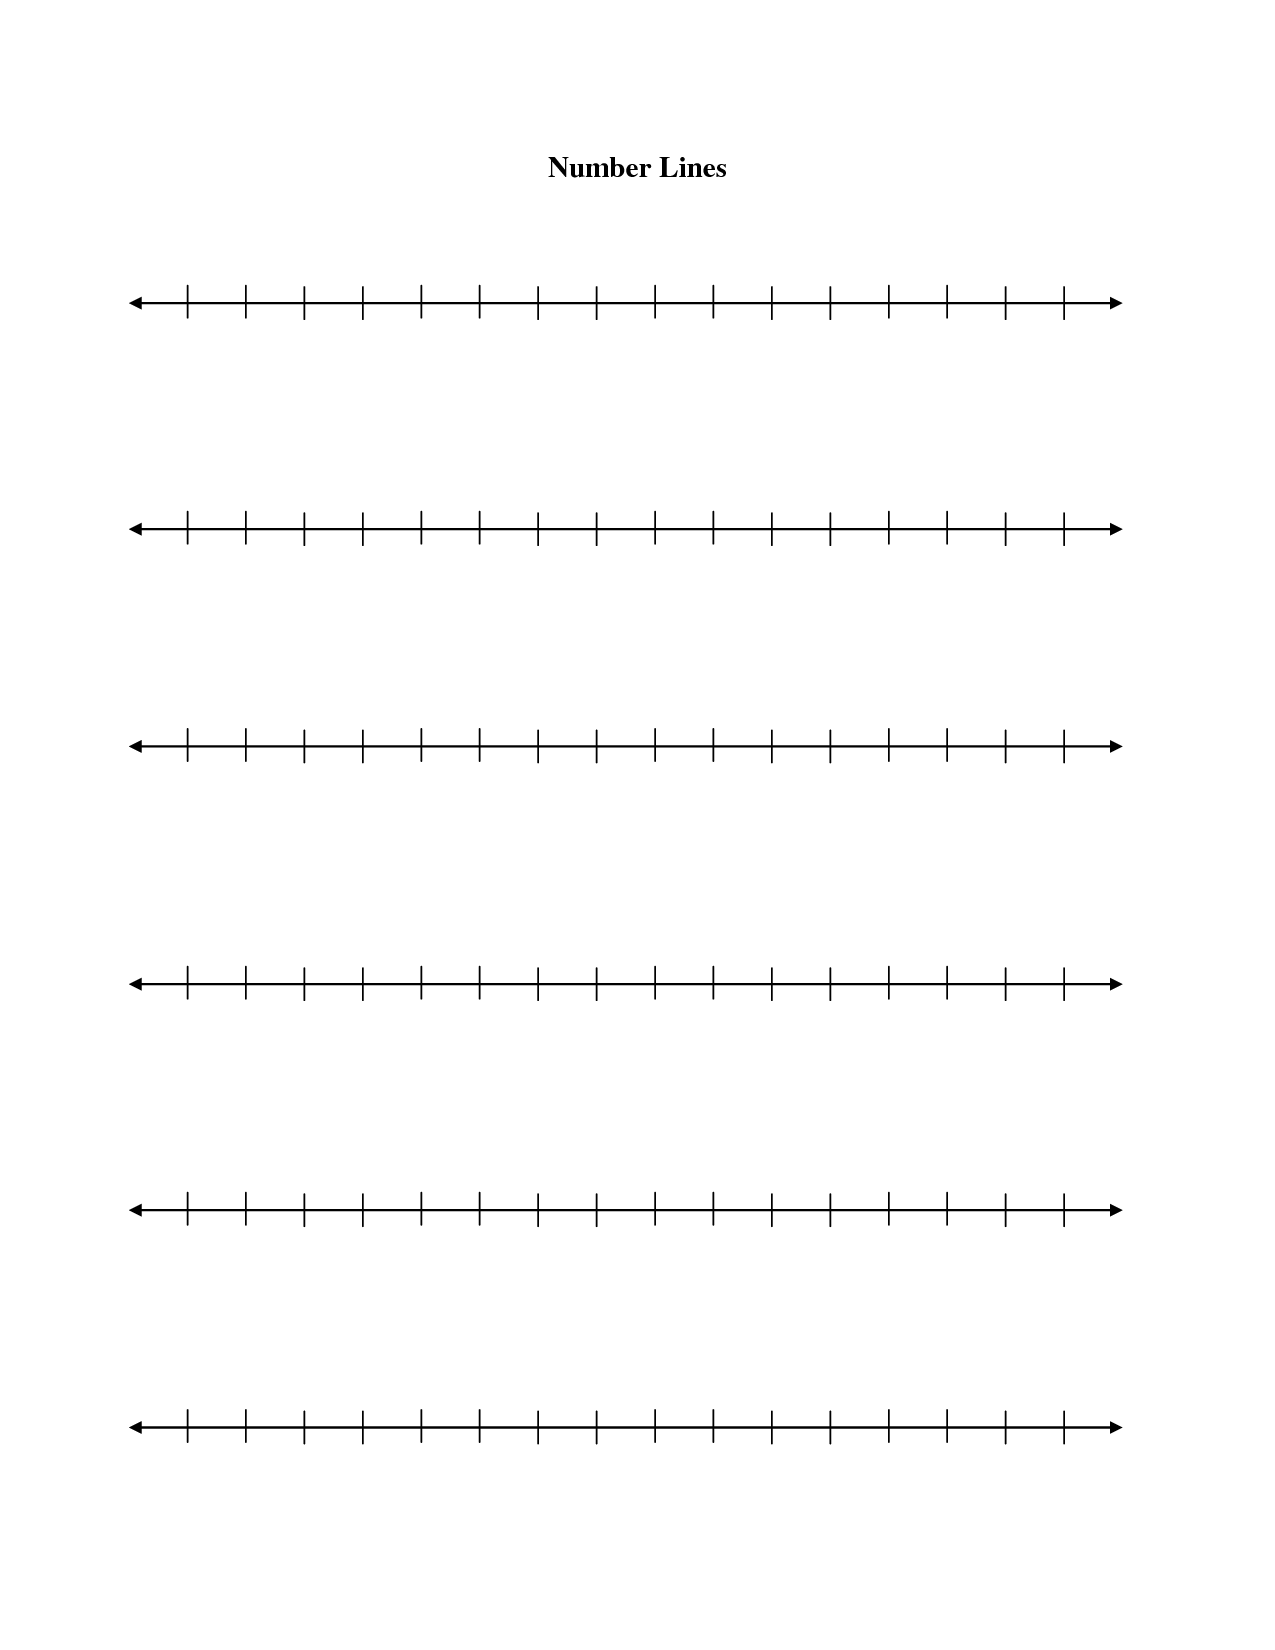 Free Blank Number Line Printable